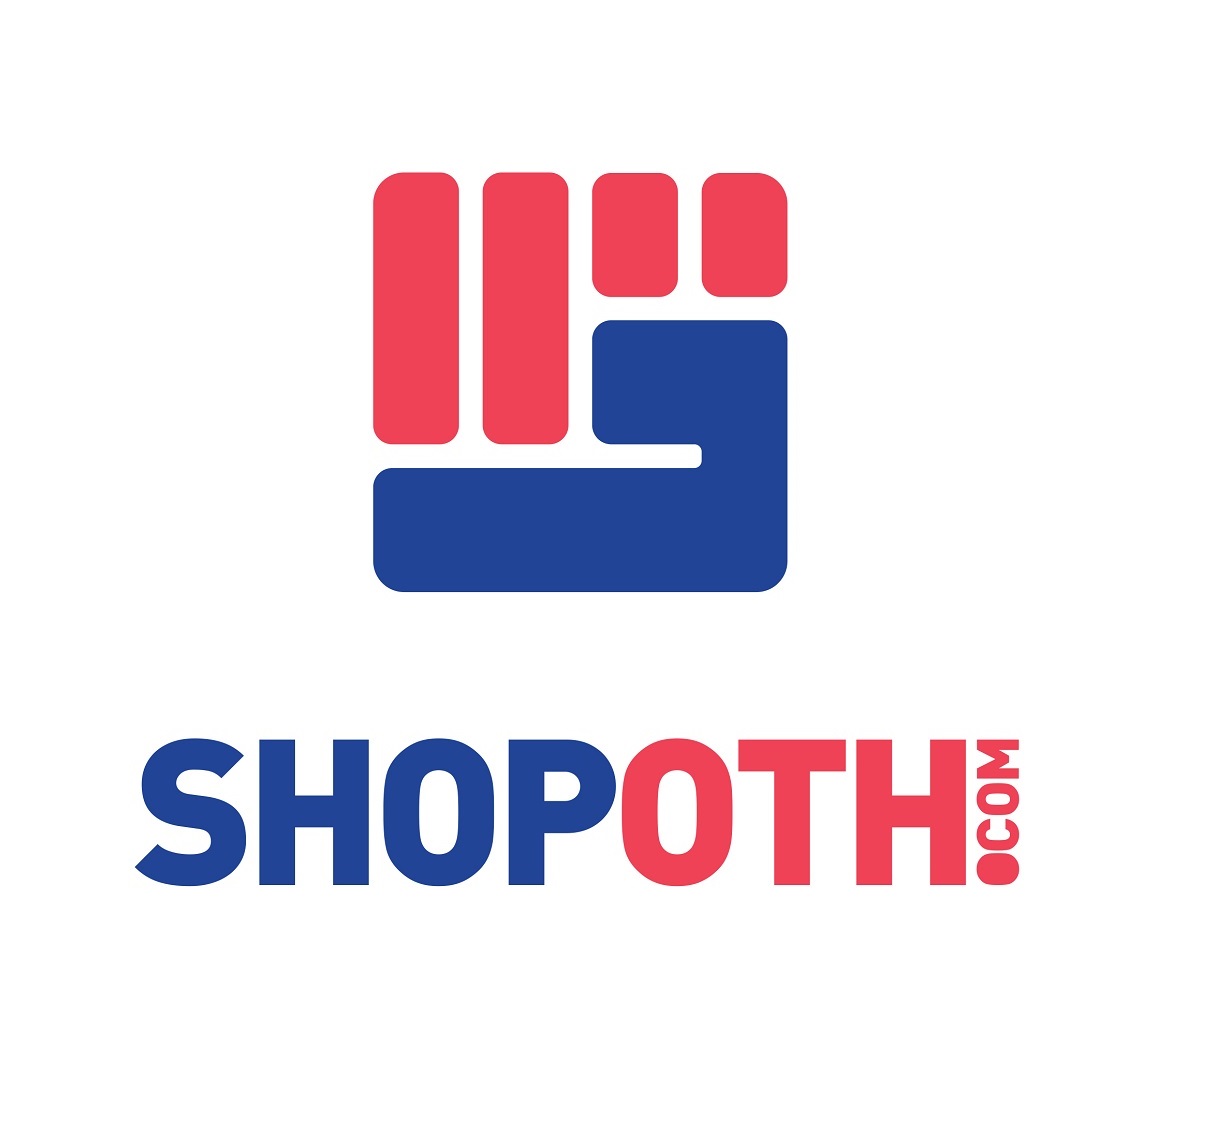 Business logo of Shopoth.com